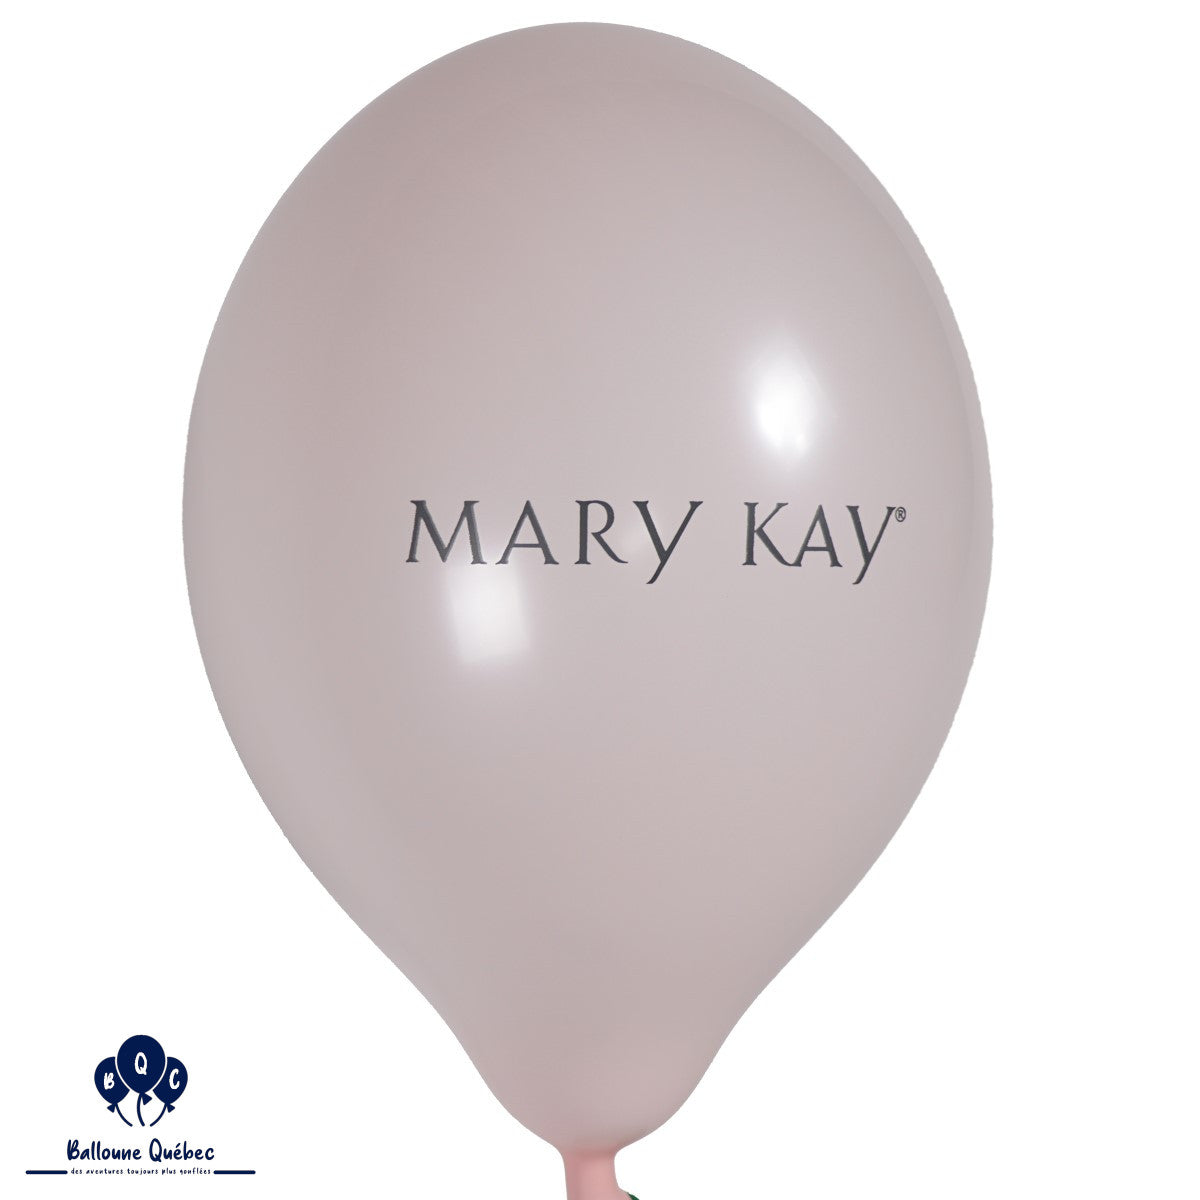 Belbal B120 14" Mary Kay Balloons